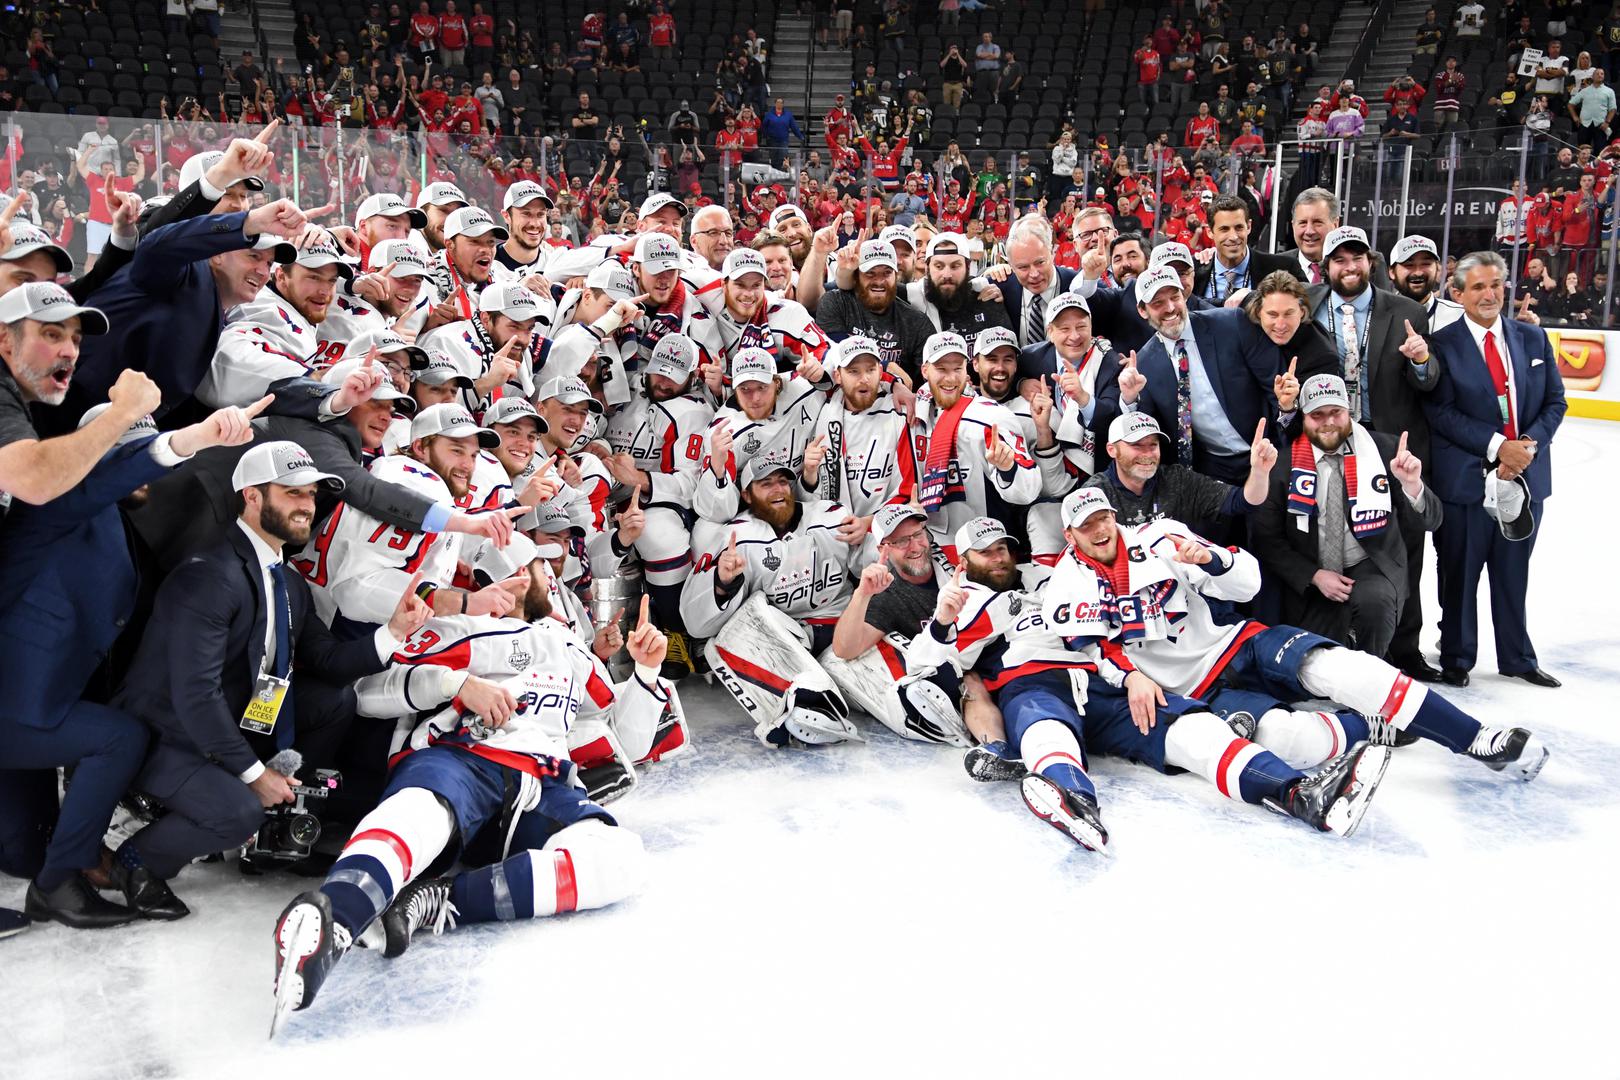 Capitalsi su tako s 4-1 u pobjedama osvojili trofej pobjednika američke profesionalne lige u hokeju na ledu